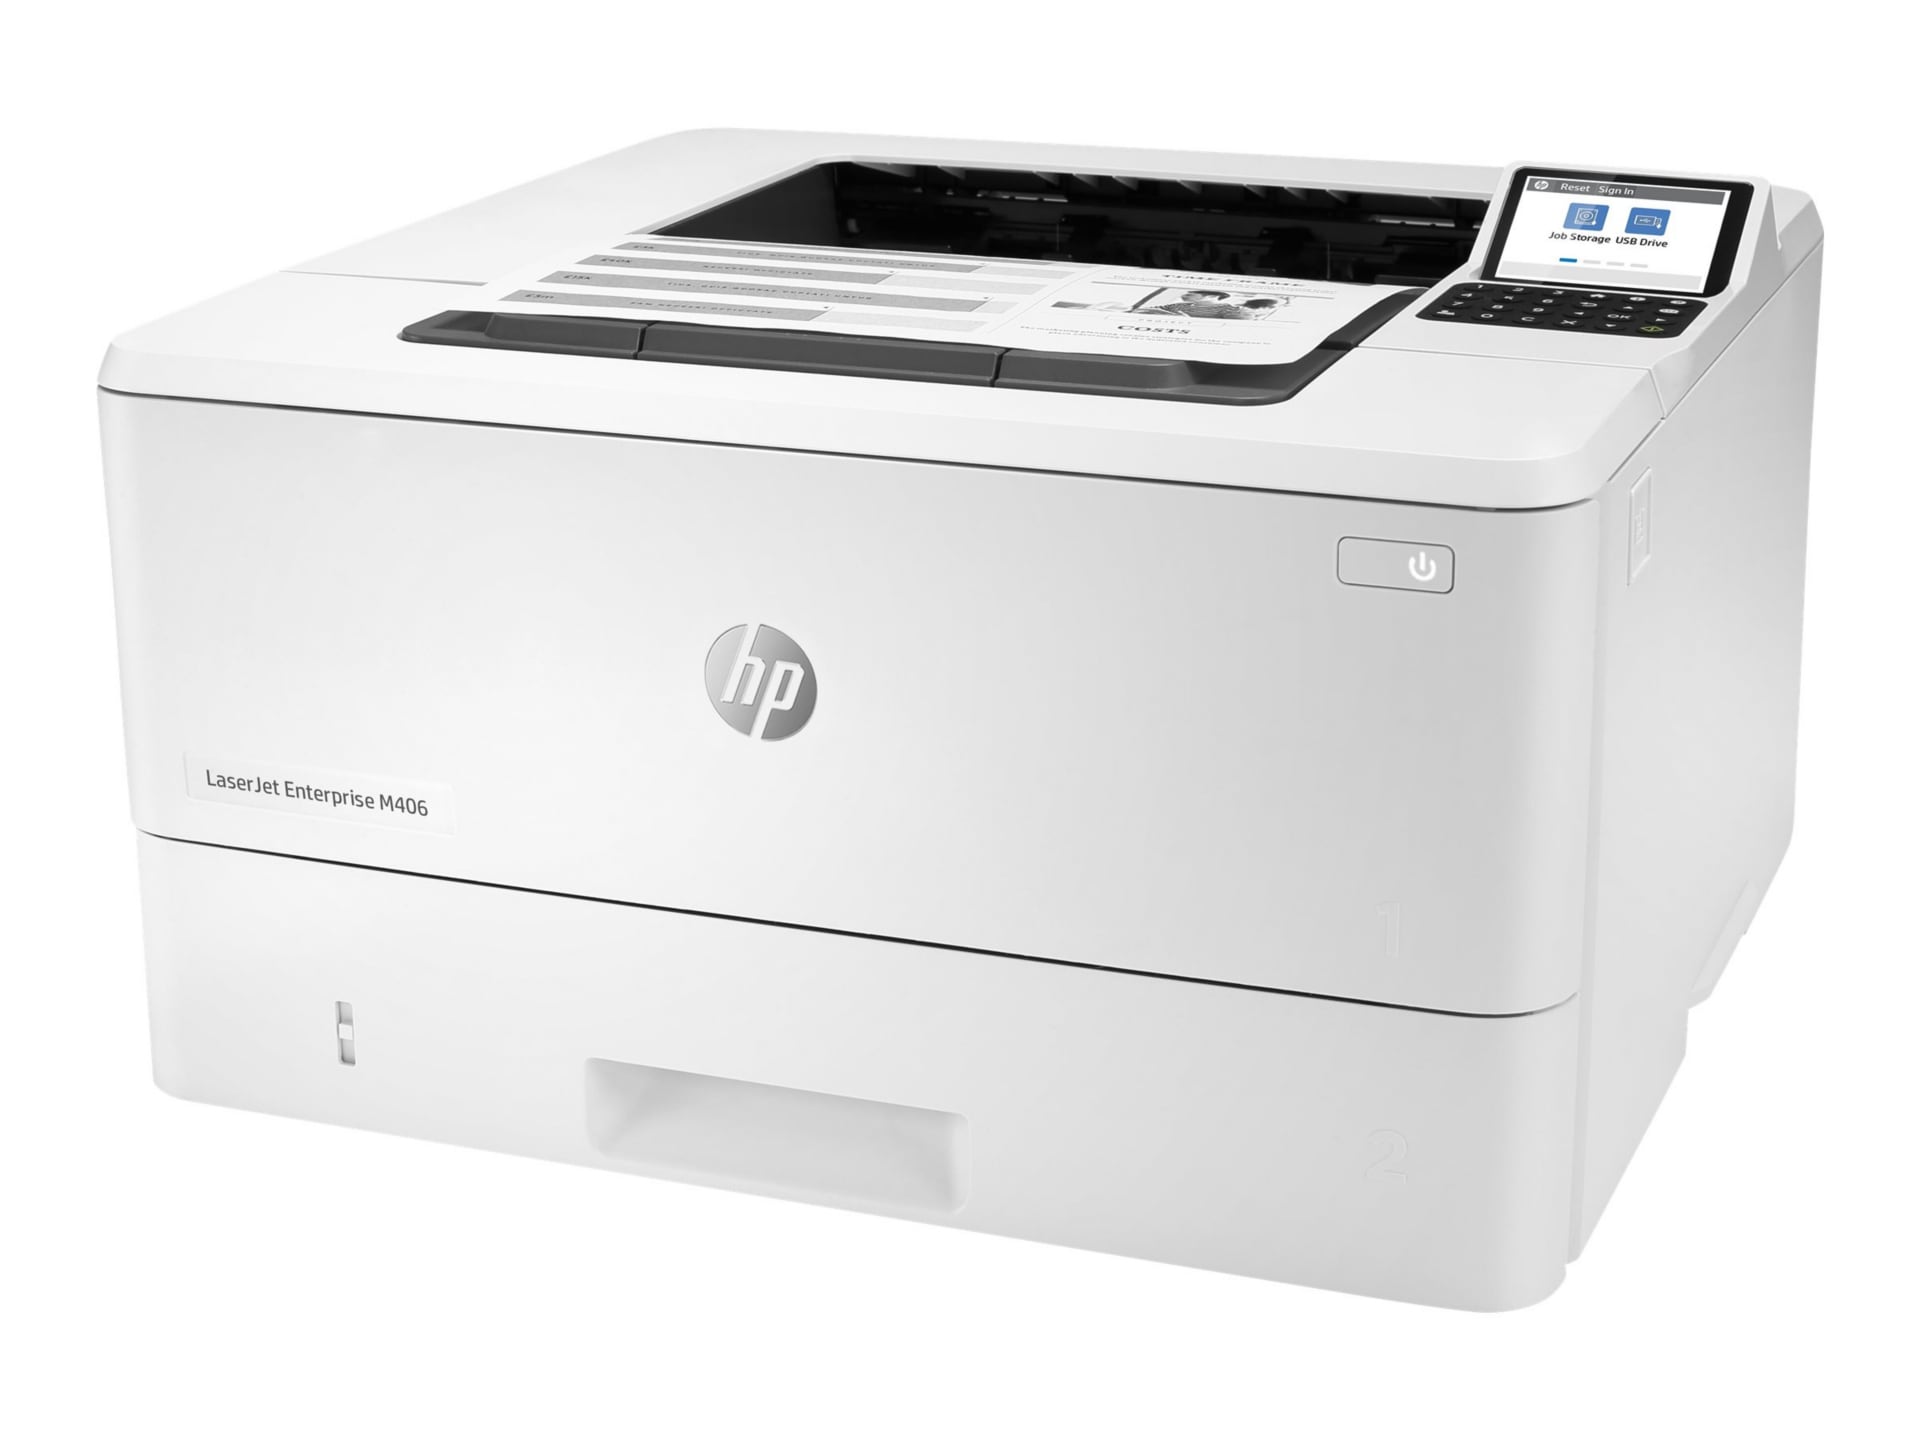 HP LaserJet Enterprise M406 M406dn Desktop Laser Printer - Monochrome